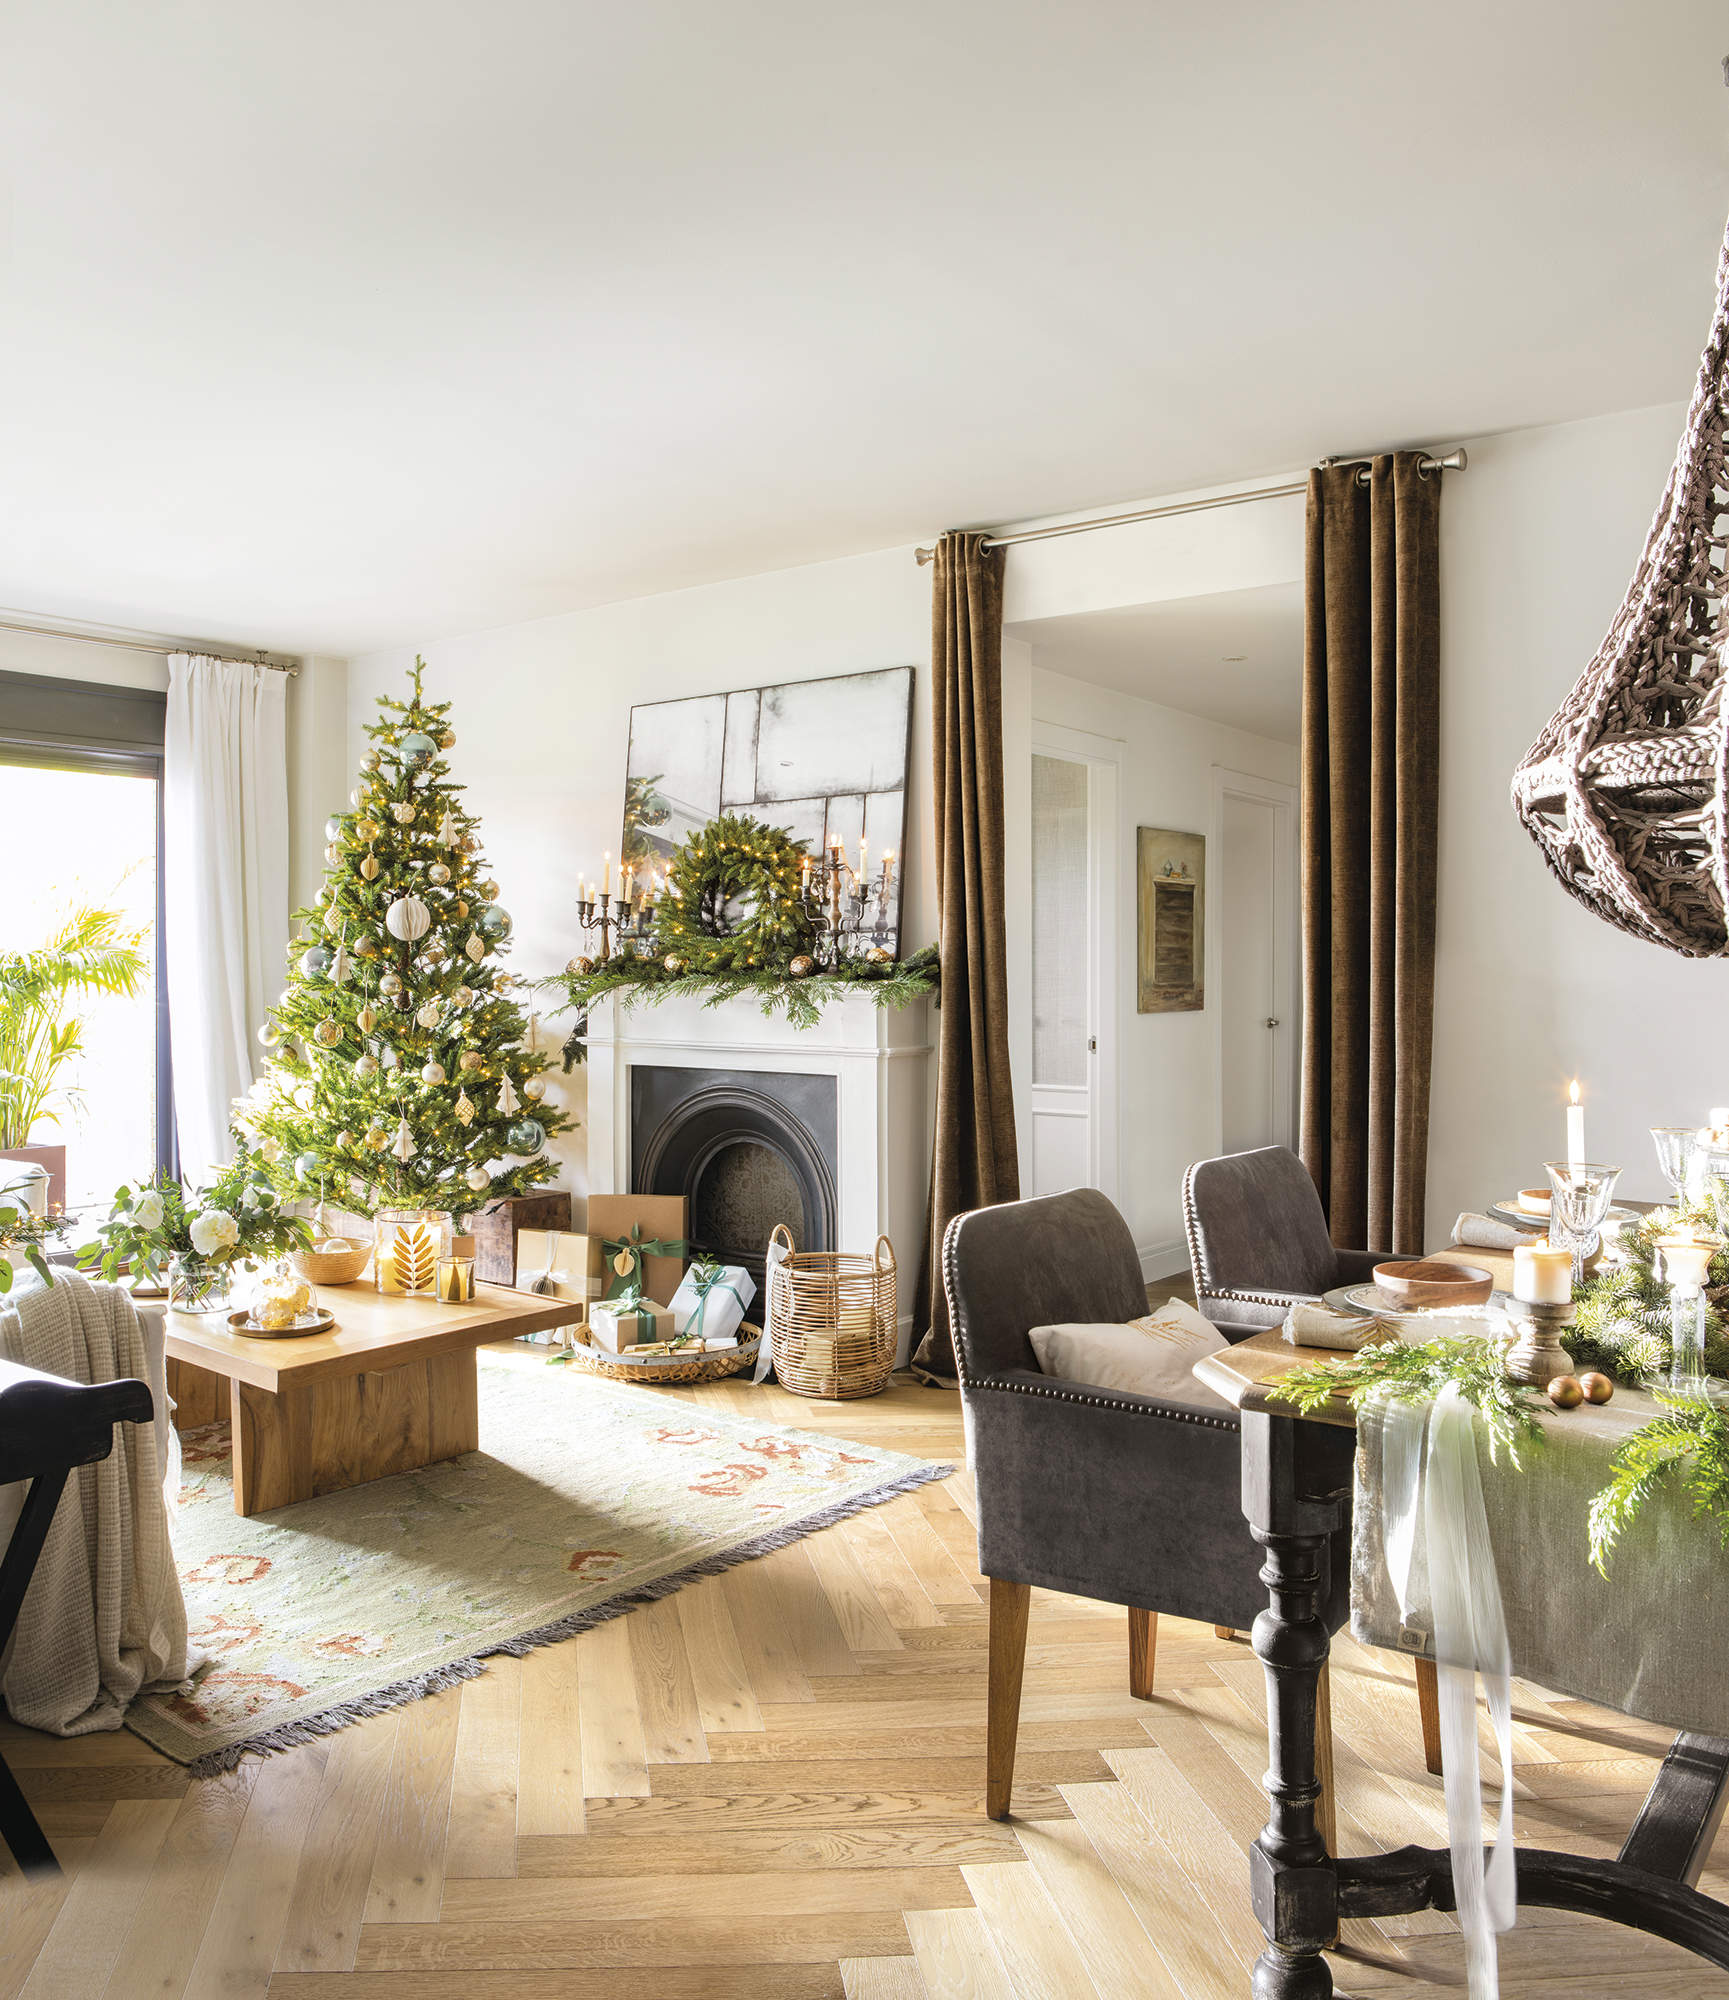 Salón con decoración de Navidad y árbol de Navidad